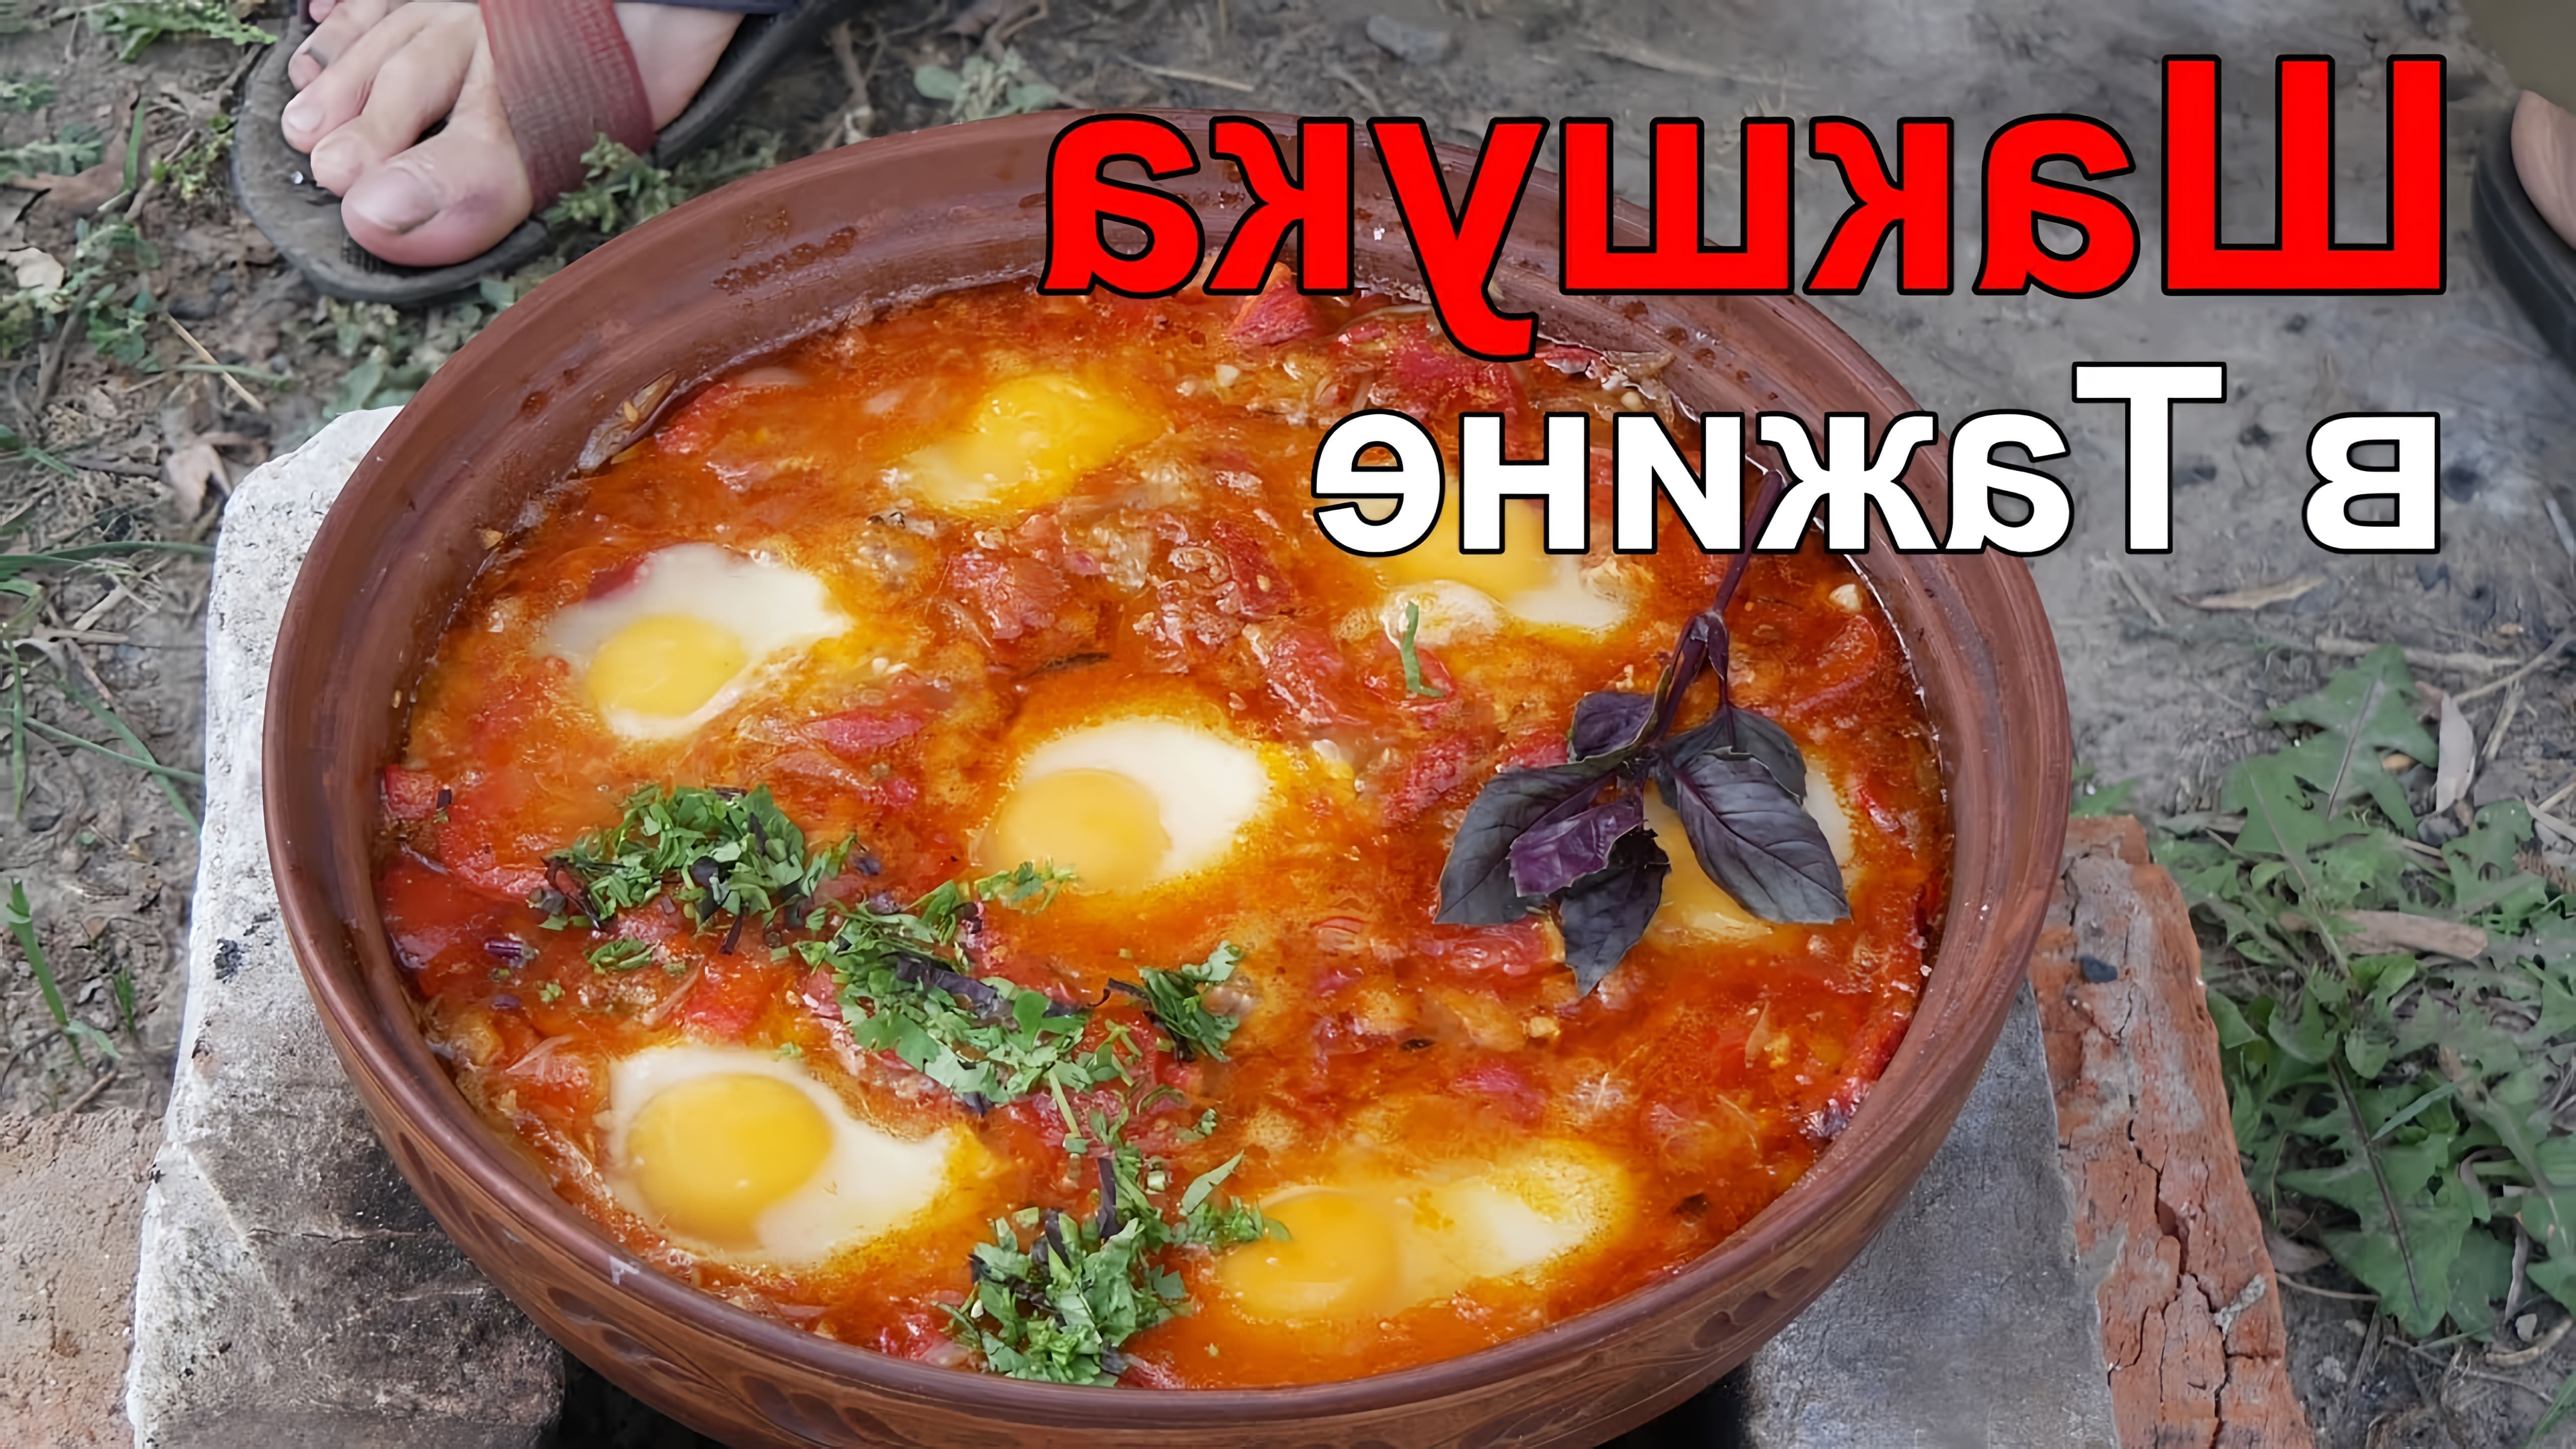 Шакшука - это блюдо, которое готовится из яиц, помидоров и специй